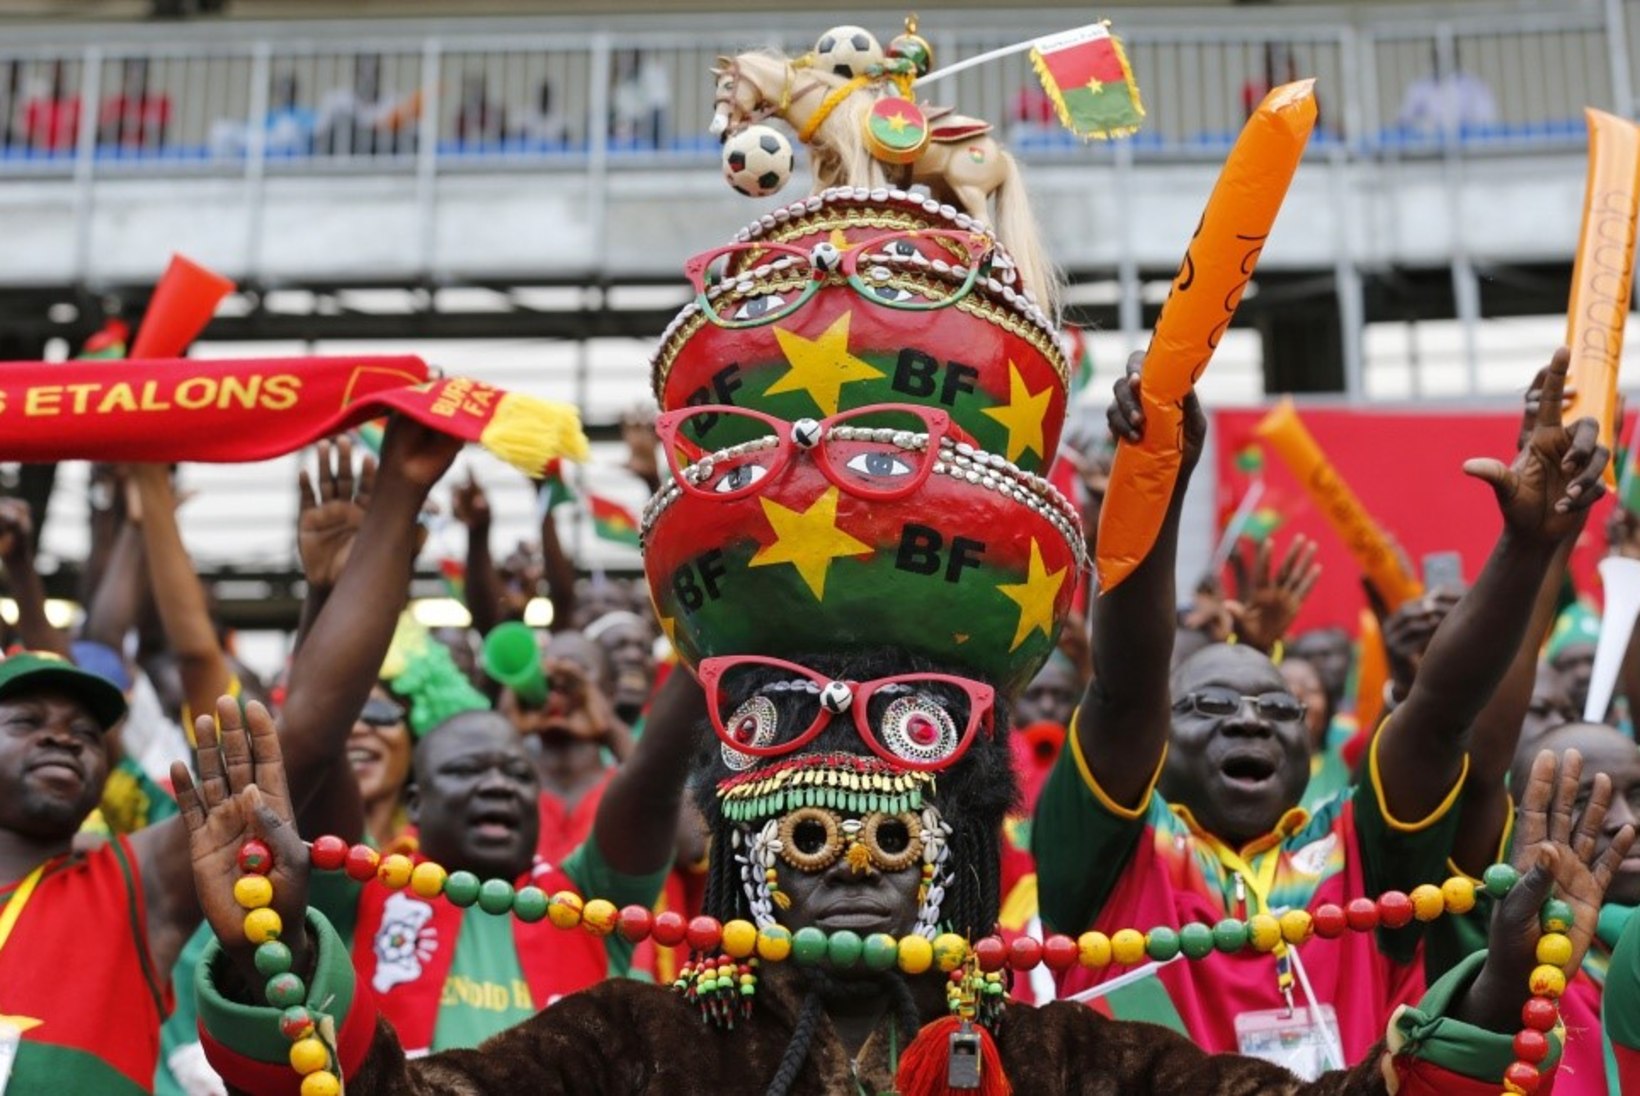 GALERII: Aafrika meistrivõistluste vahvaimad fännid, mõistagi kohal ka kuulus Burkina Faso nõiadoktor!